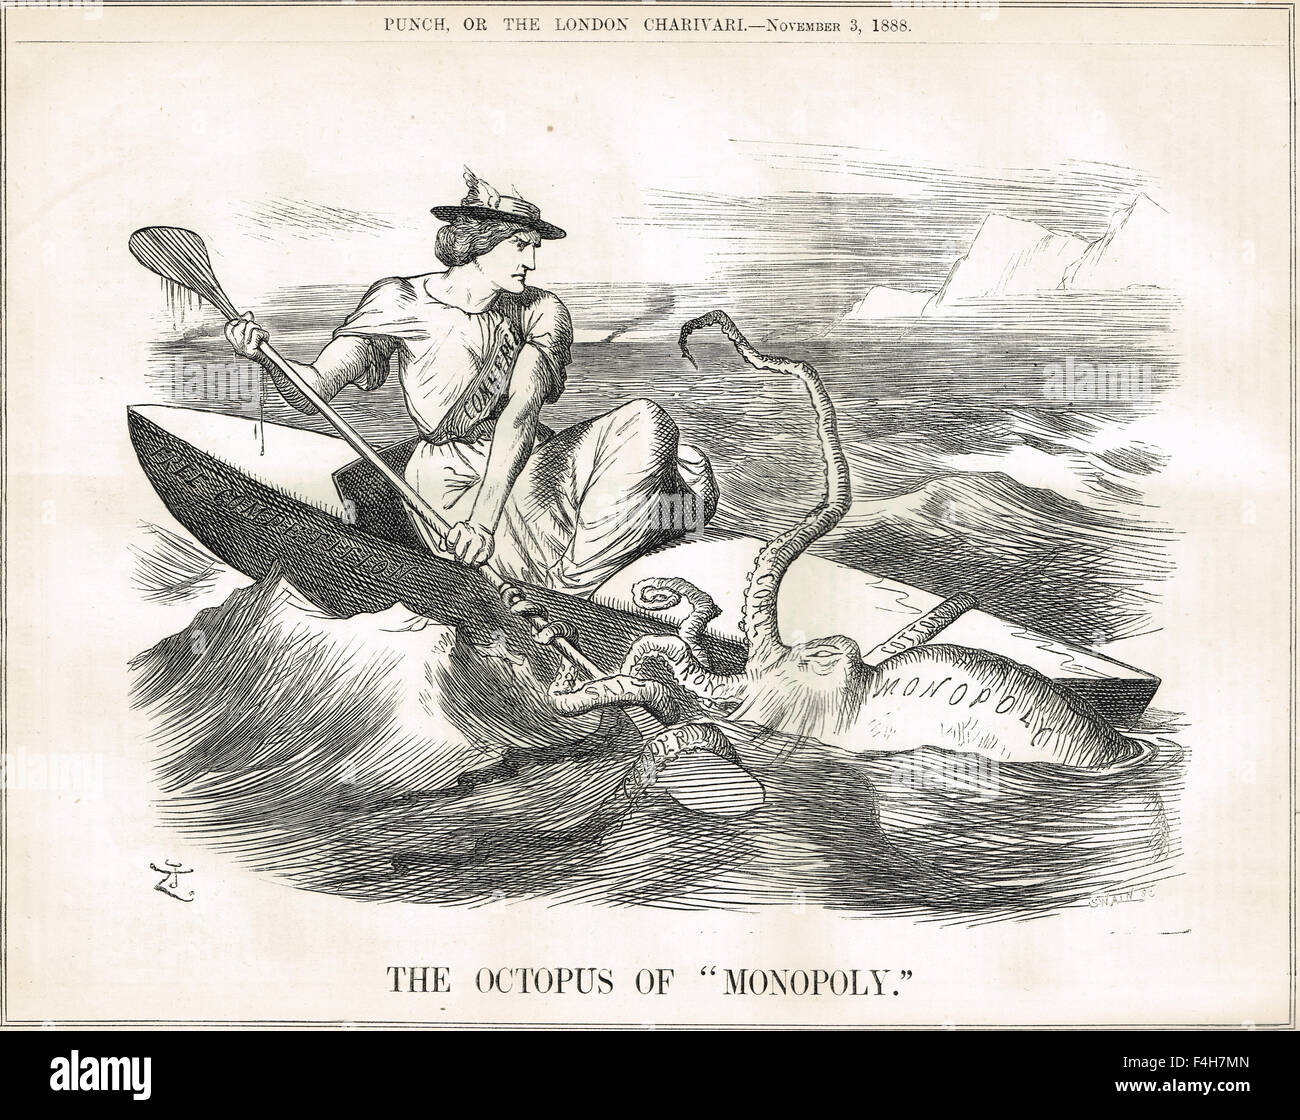 Pulpo de monopolio contra la libre competencia. John Tenniel Punch cartoon 1888 Foto de stock